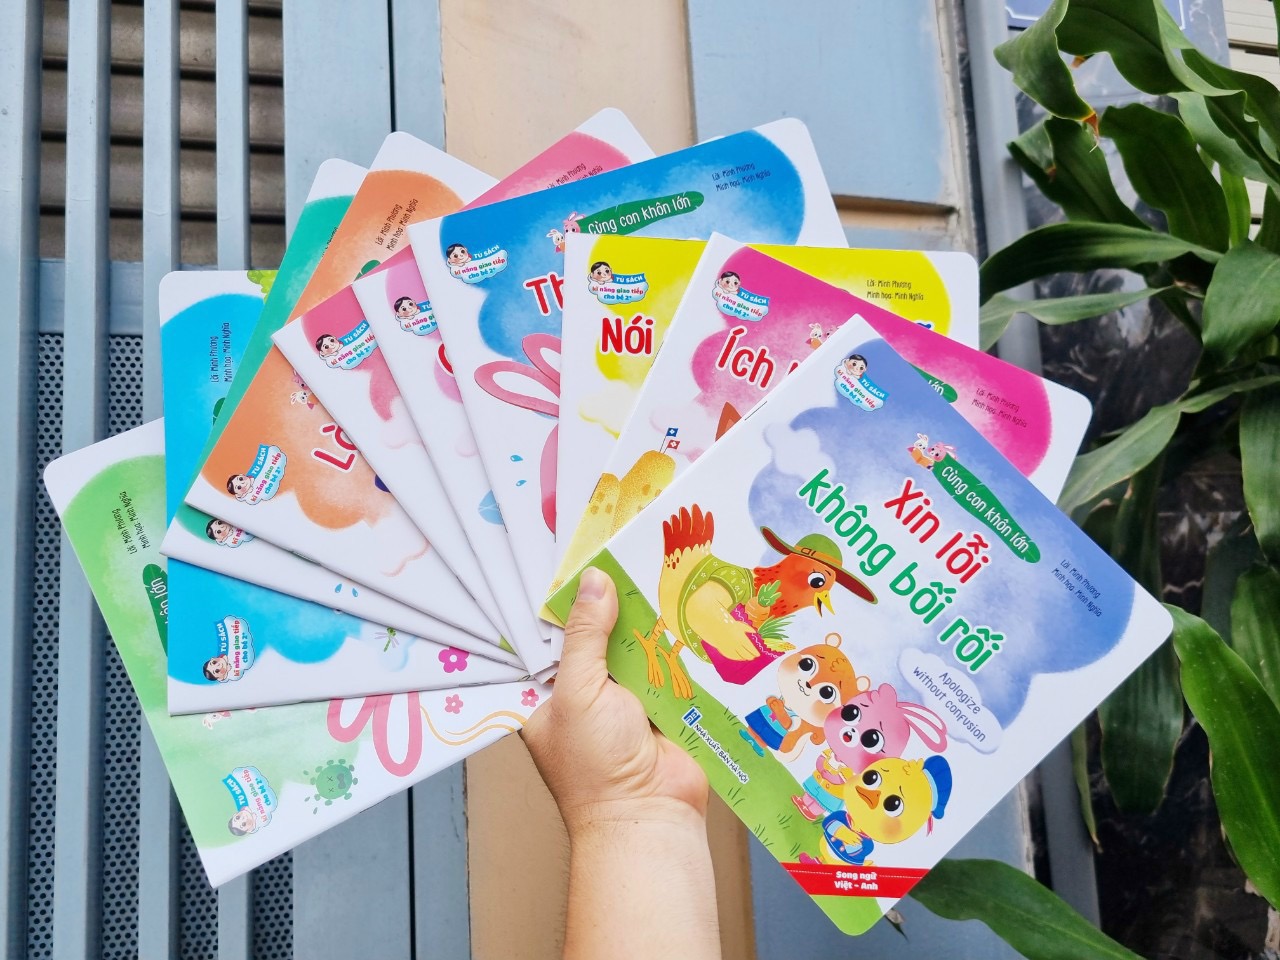 Bộ sách Kỹ năng sống Cùng con khôn lớn Song ngữ Anh Việt cho bé từ 0-6 tuổi (Kèm file nghe-Bộ 10 cuốn